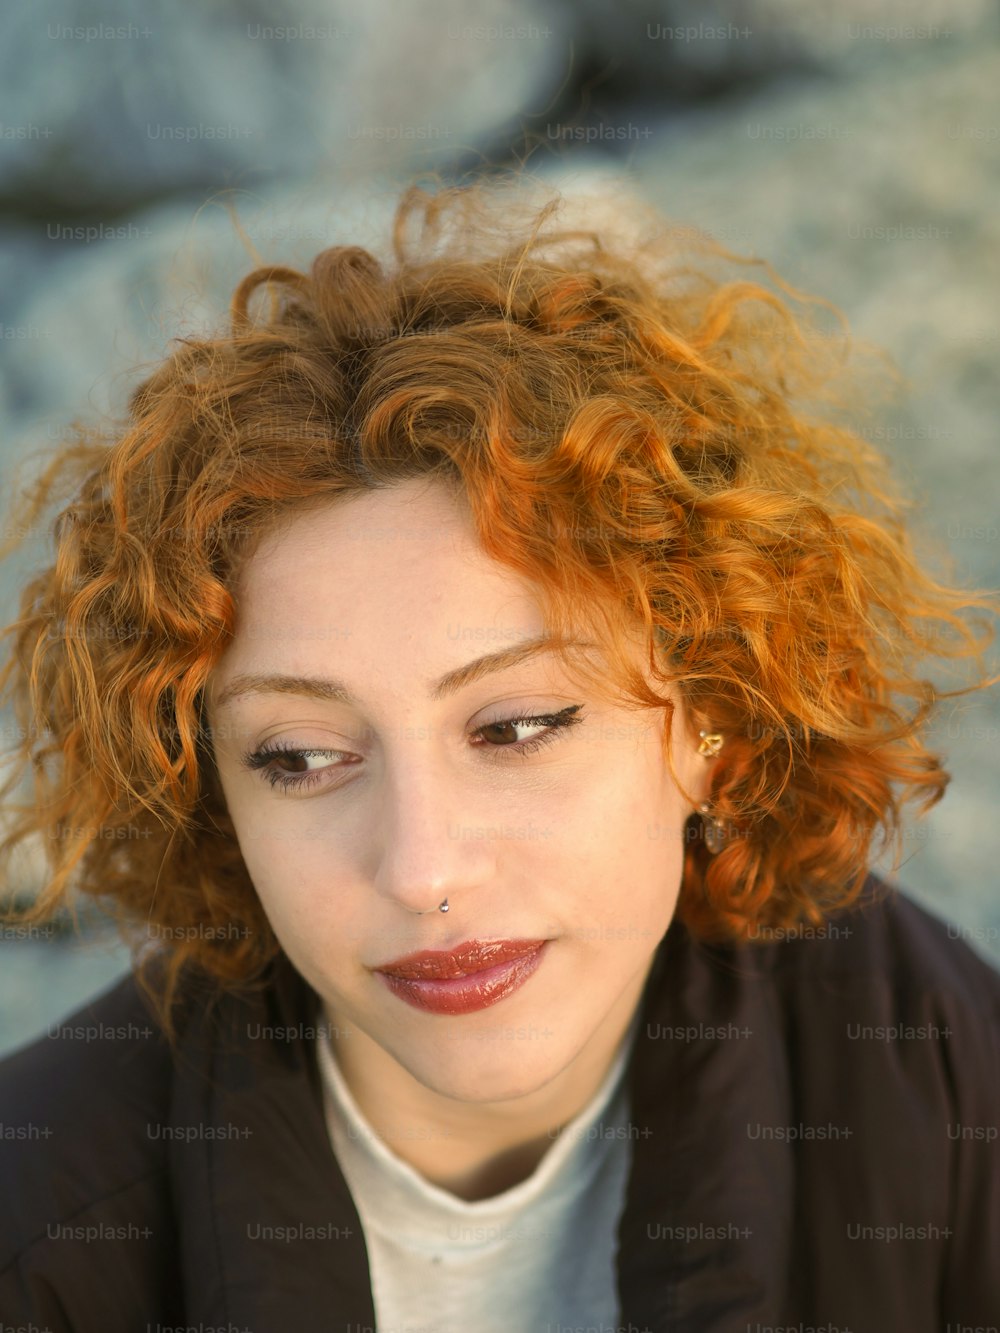 eine Person mit roten Haaren